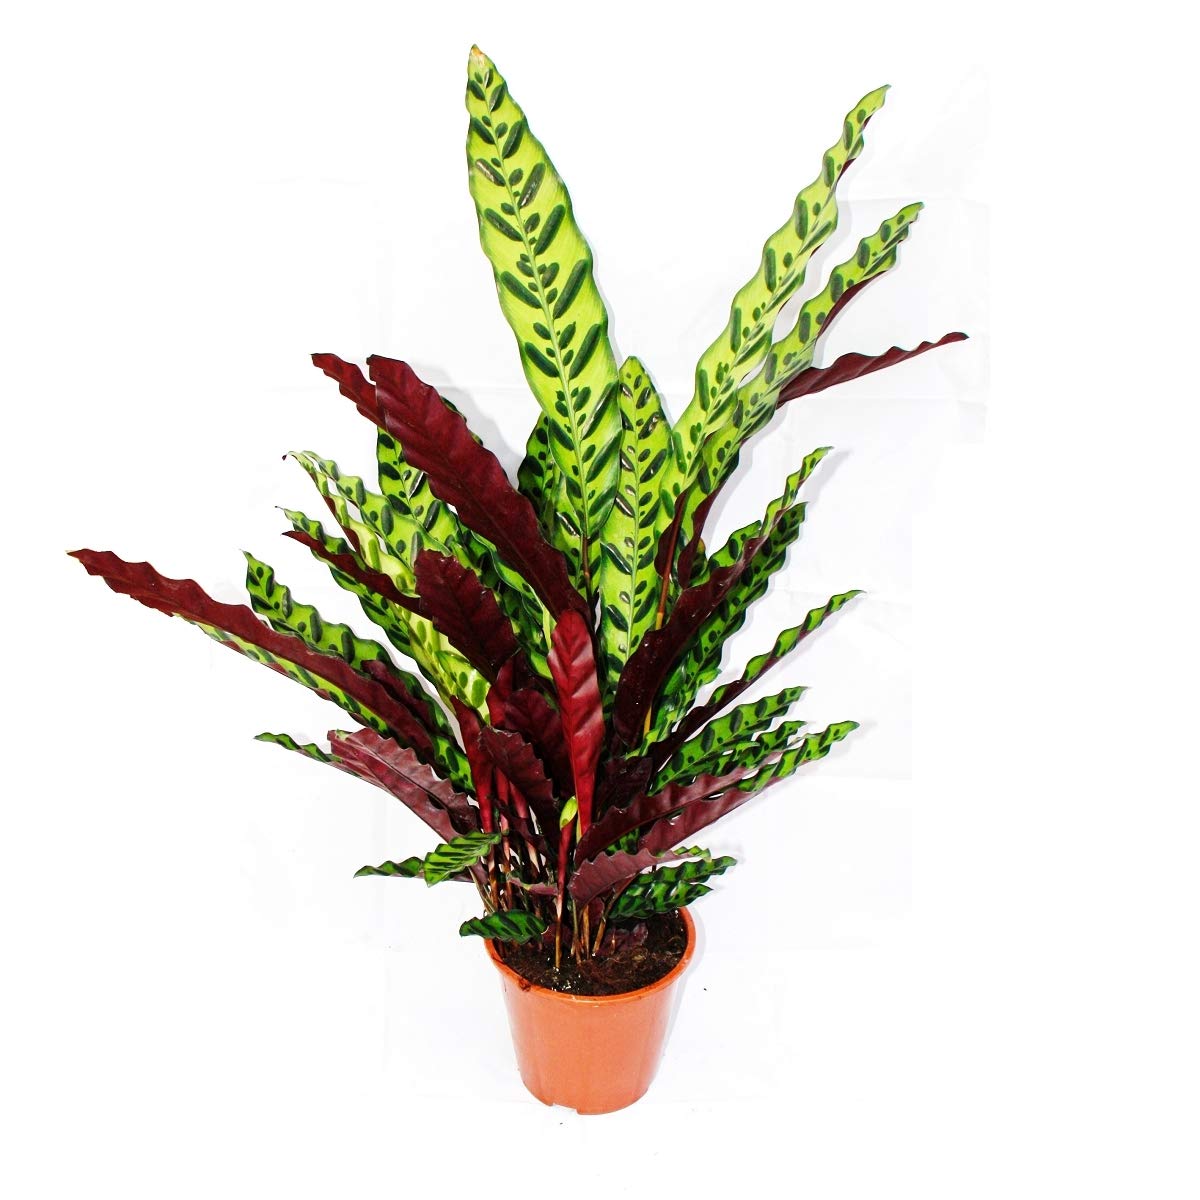 Exotenherz - XXL-Schattenpflanze mit ausgefallenem Blattmuster - Calathea lancifolia - 17cm Topf - ca. 60-70cm hoch